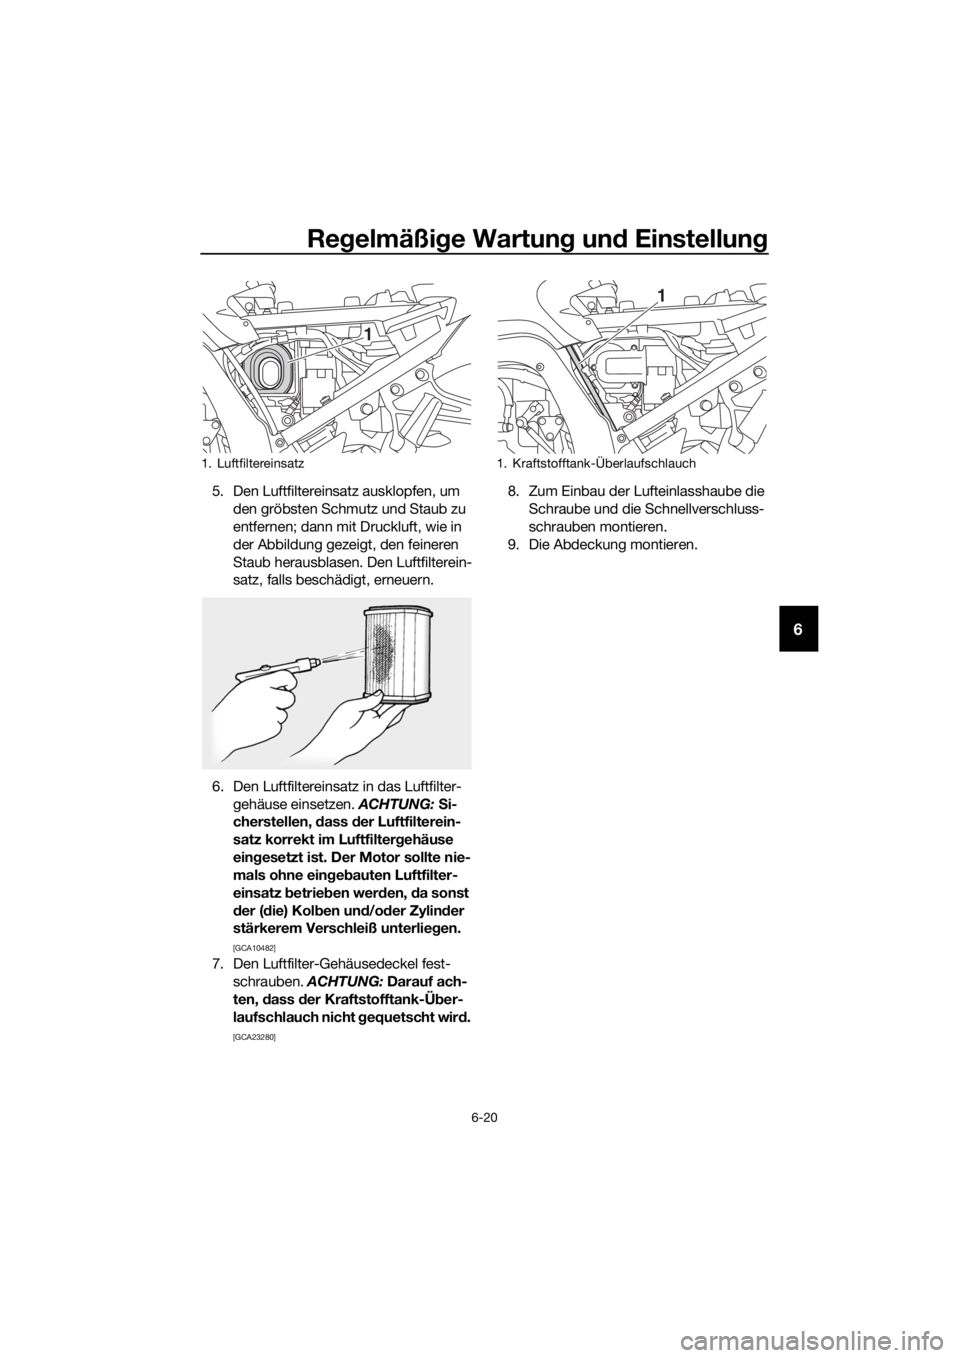 YAMAHA FJR1300A 2018  Betriebsanleitungen (in German) Regelmäßi ge Wartun g un d Einstellun g
6-20
6
5. Den Luftfiltereinsatz ausklopfen, um 
den gröbsten Schmutz und Staub zu 
entfernen; dann mit Druckluft, wie in 
der Abbildung gezeigt, den feineren